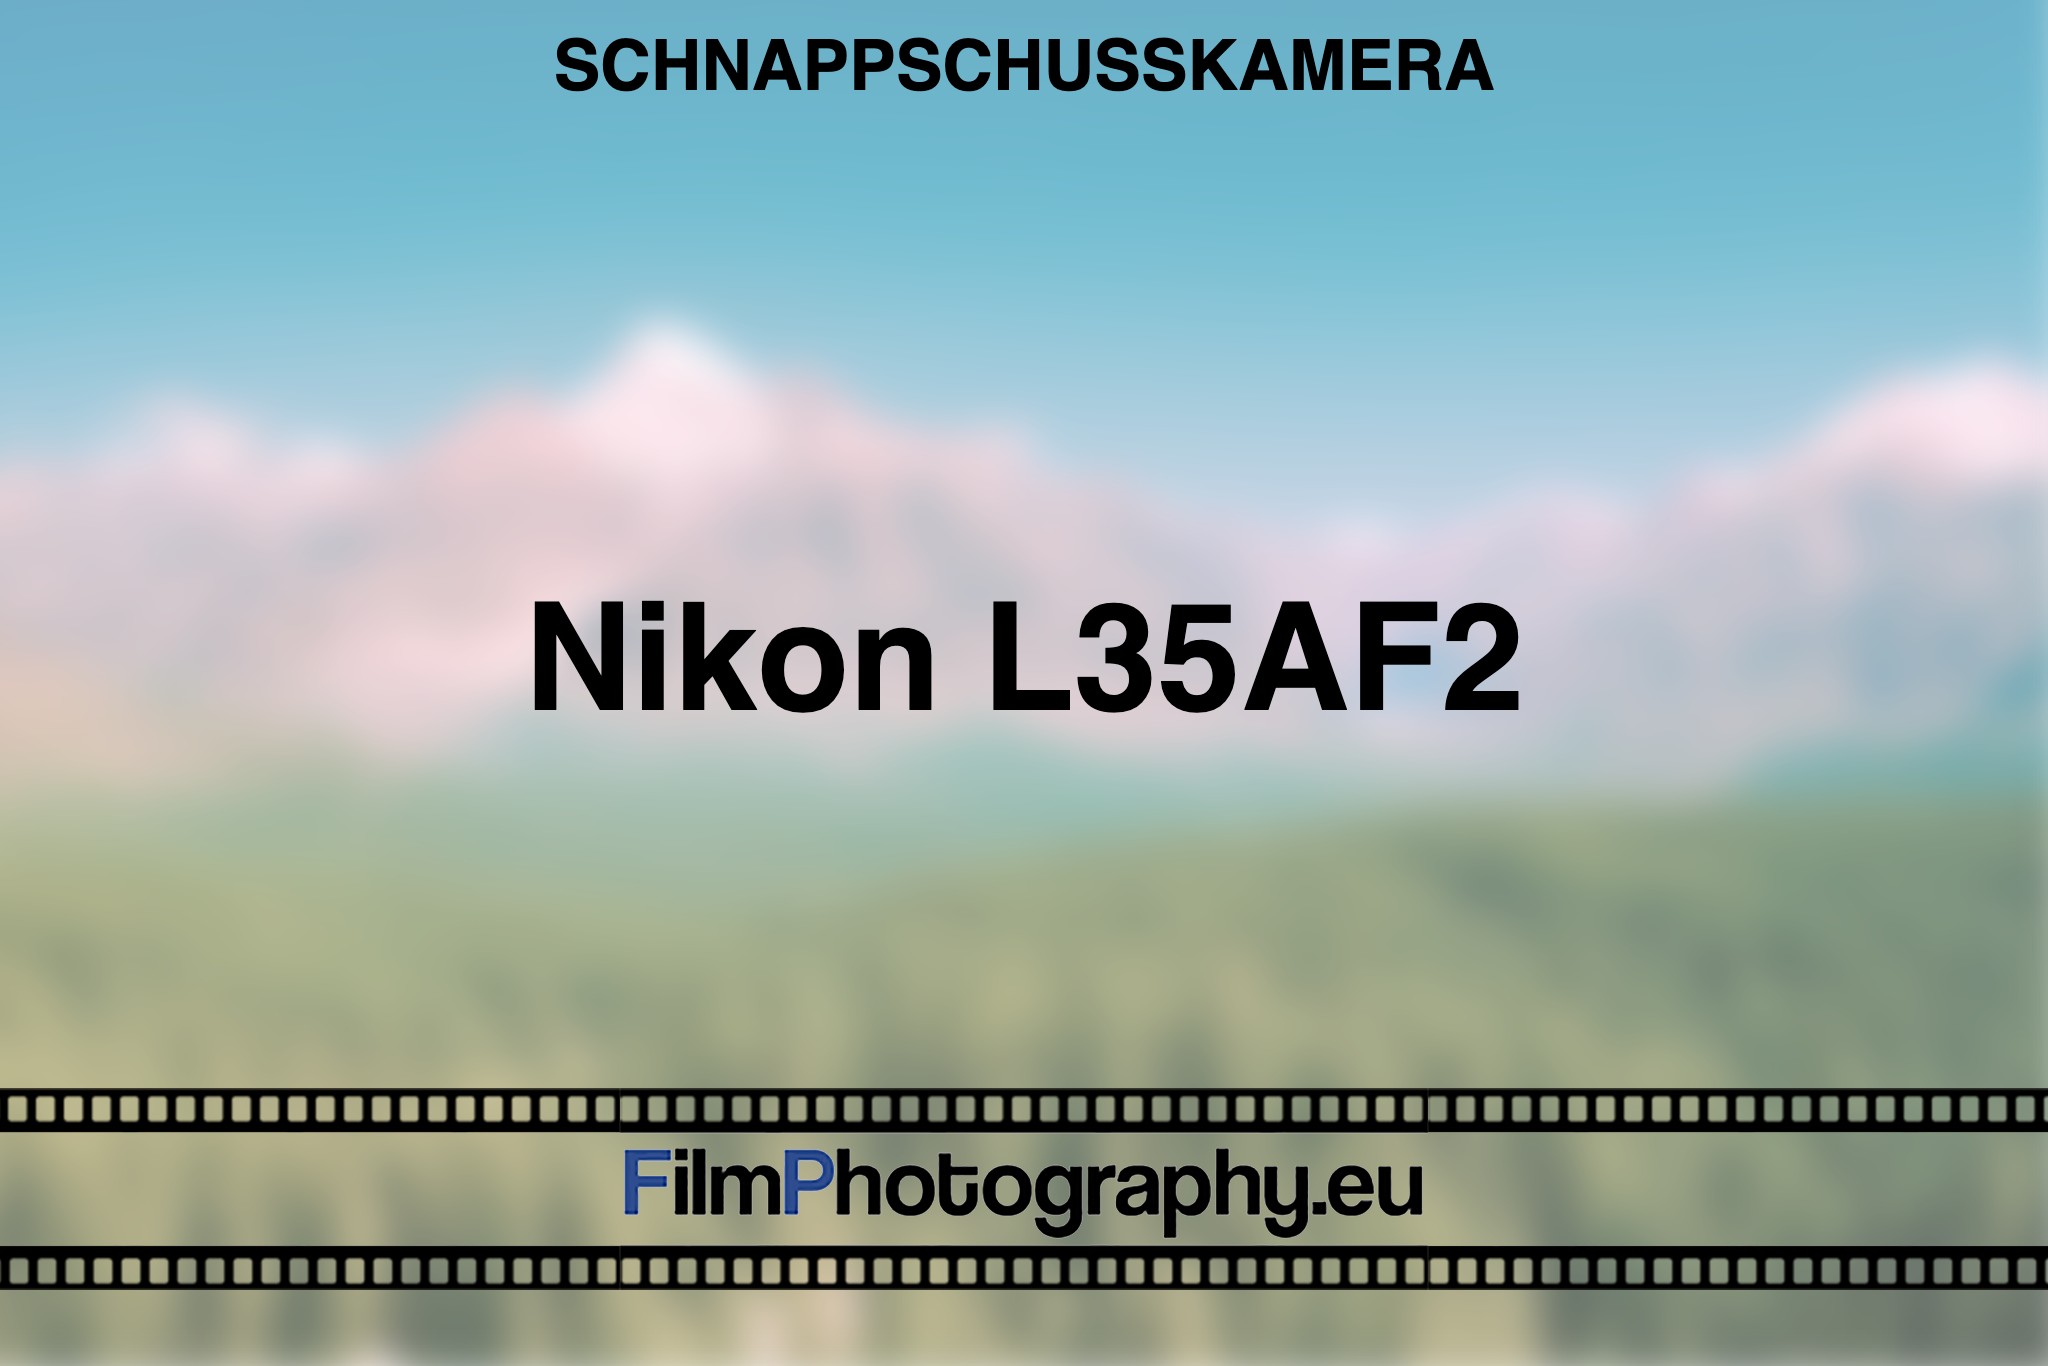 nikon-l35af2-schnappschusskamera-bnv